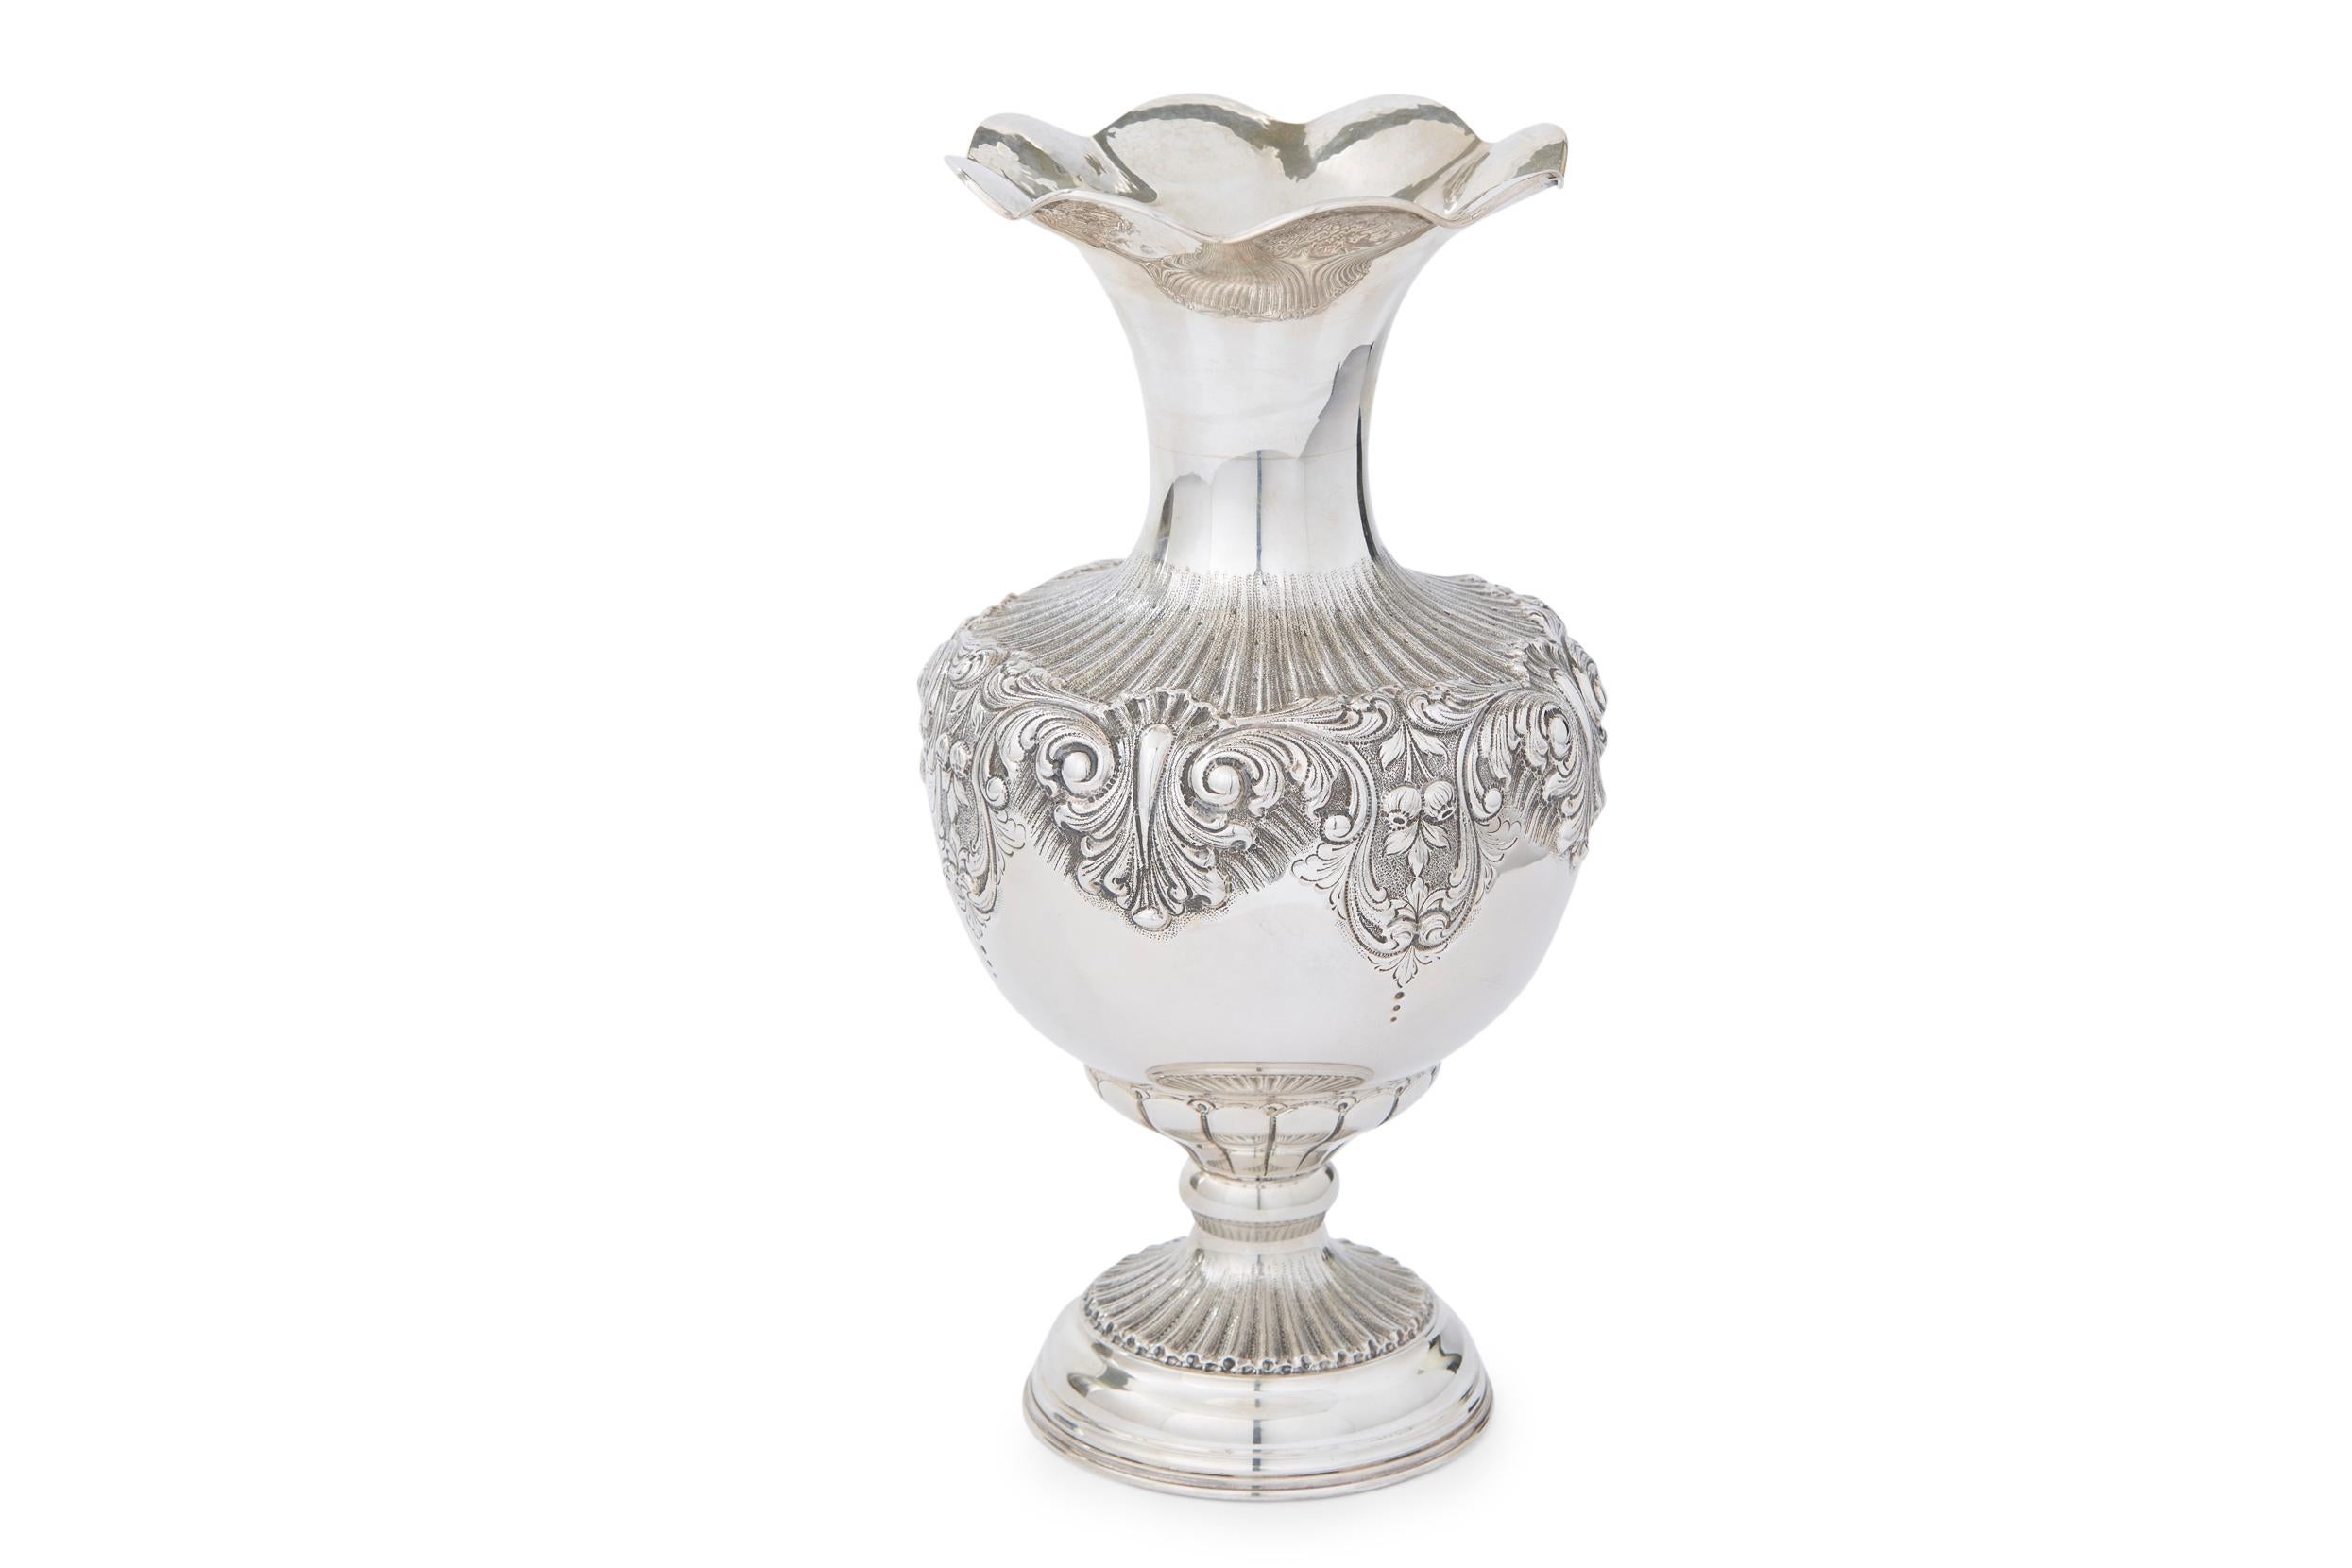 Sehr große 19. Jahrhundert Sterling Silber dekorativen Tafelaufsatz / Vase mit externen Design-Details und geriffelten Hals oben Öffnung. Die Vase / Stück ist in großem antiken Zustand. Geringe alters- und gebrauchsbedingte Abnutzung. Unterschrift